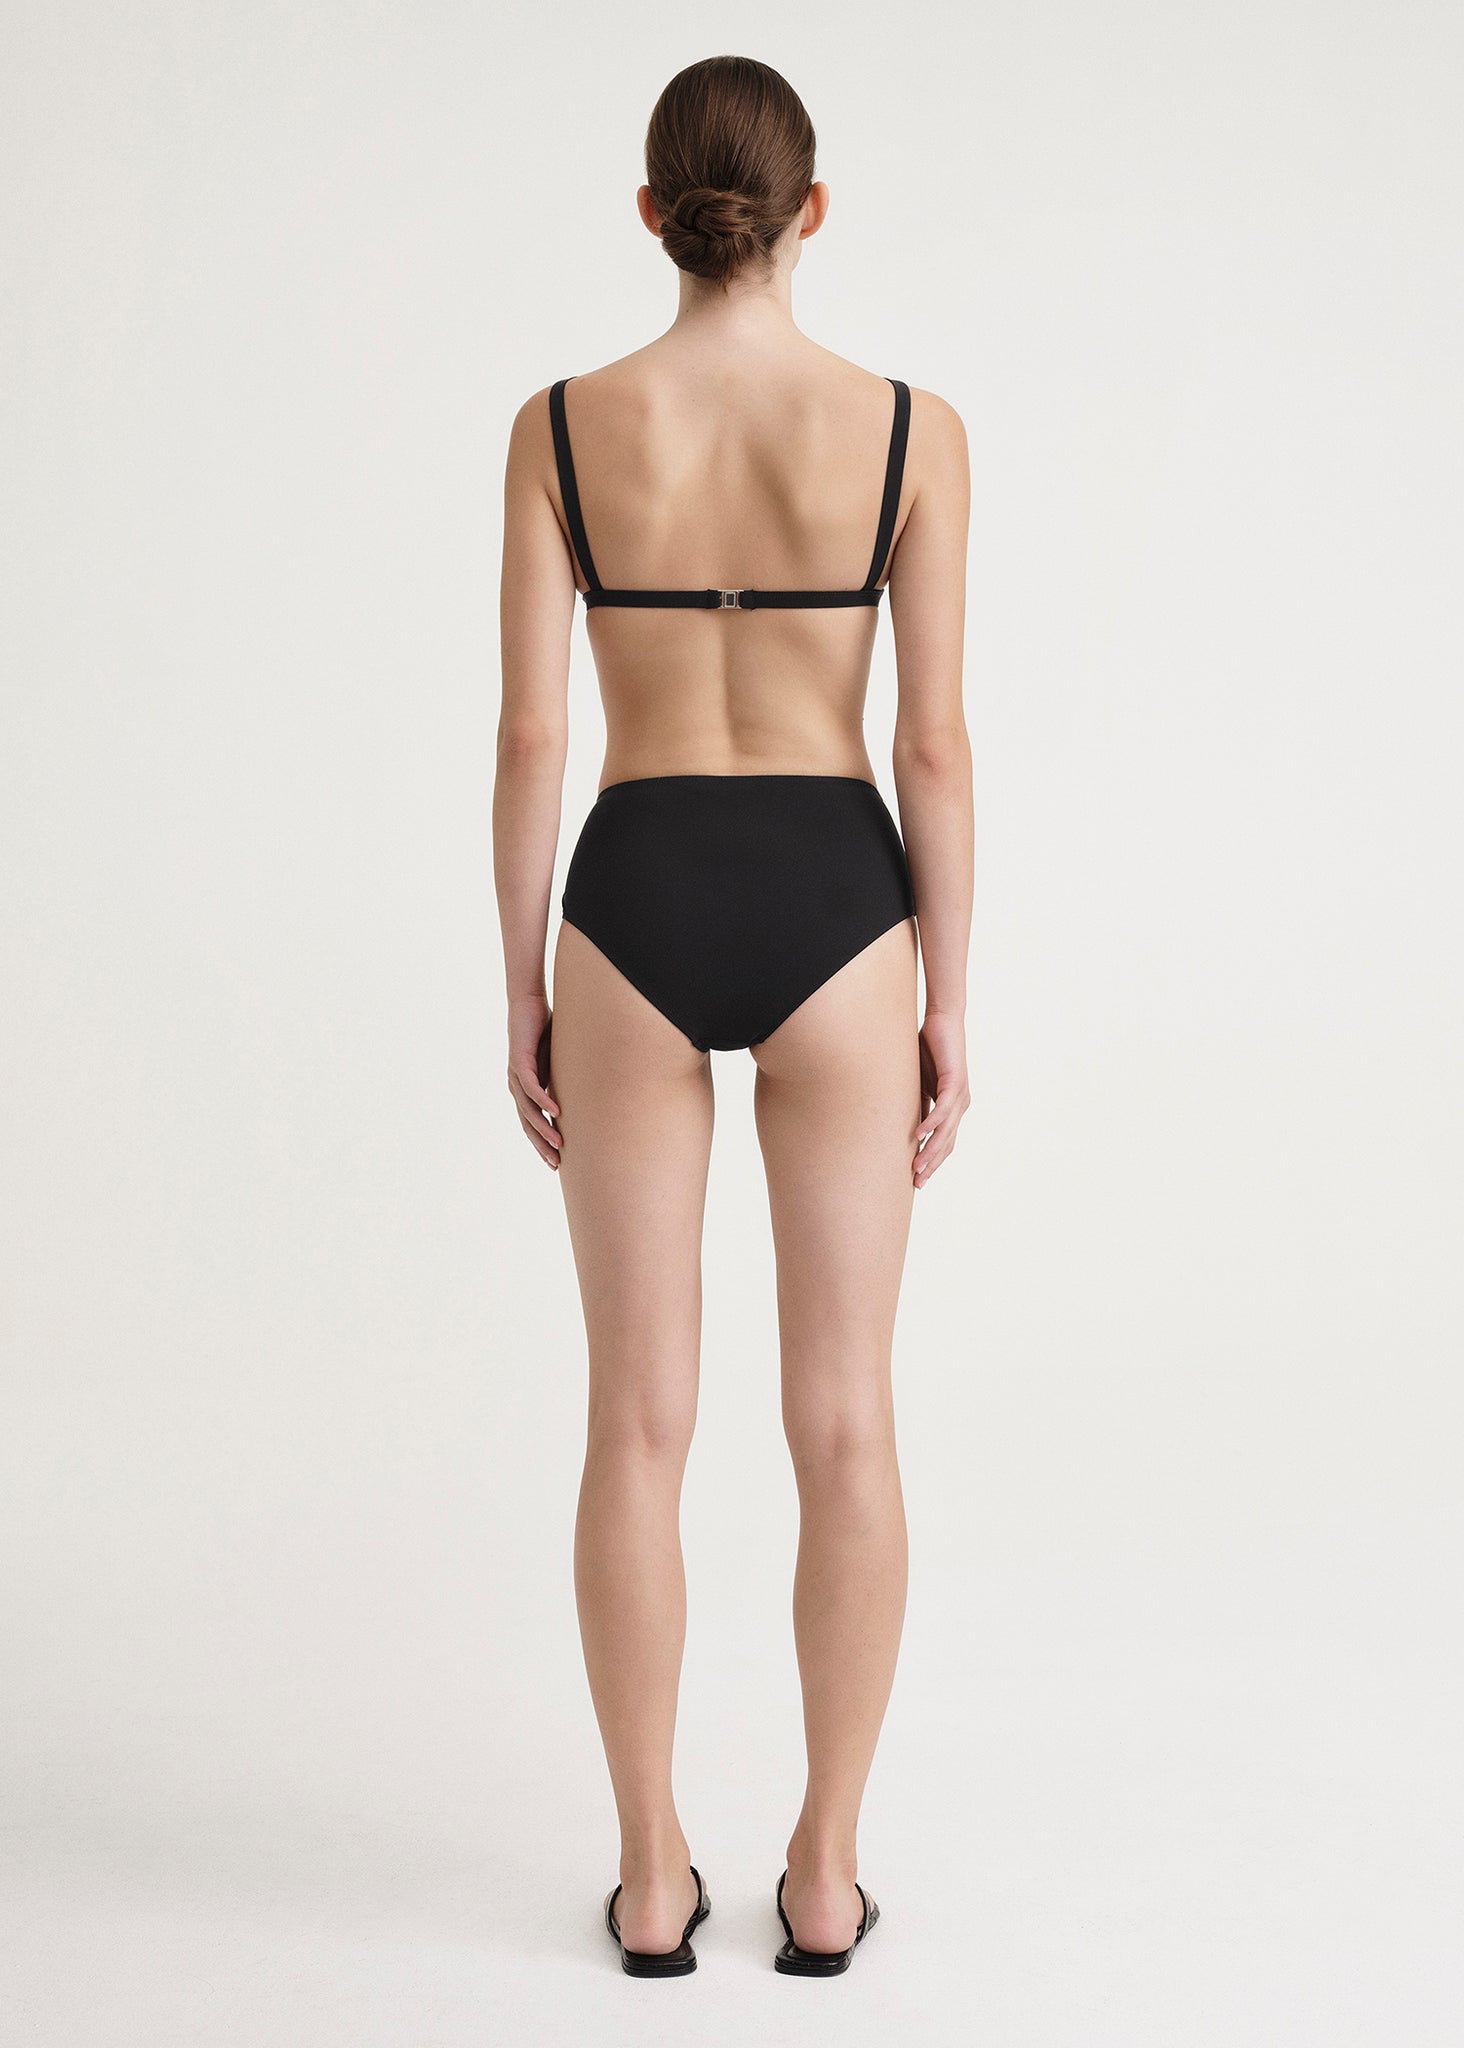 Louis Vuitton Monogram Jacquard Bikini Top BLACK. Size 38